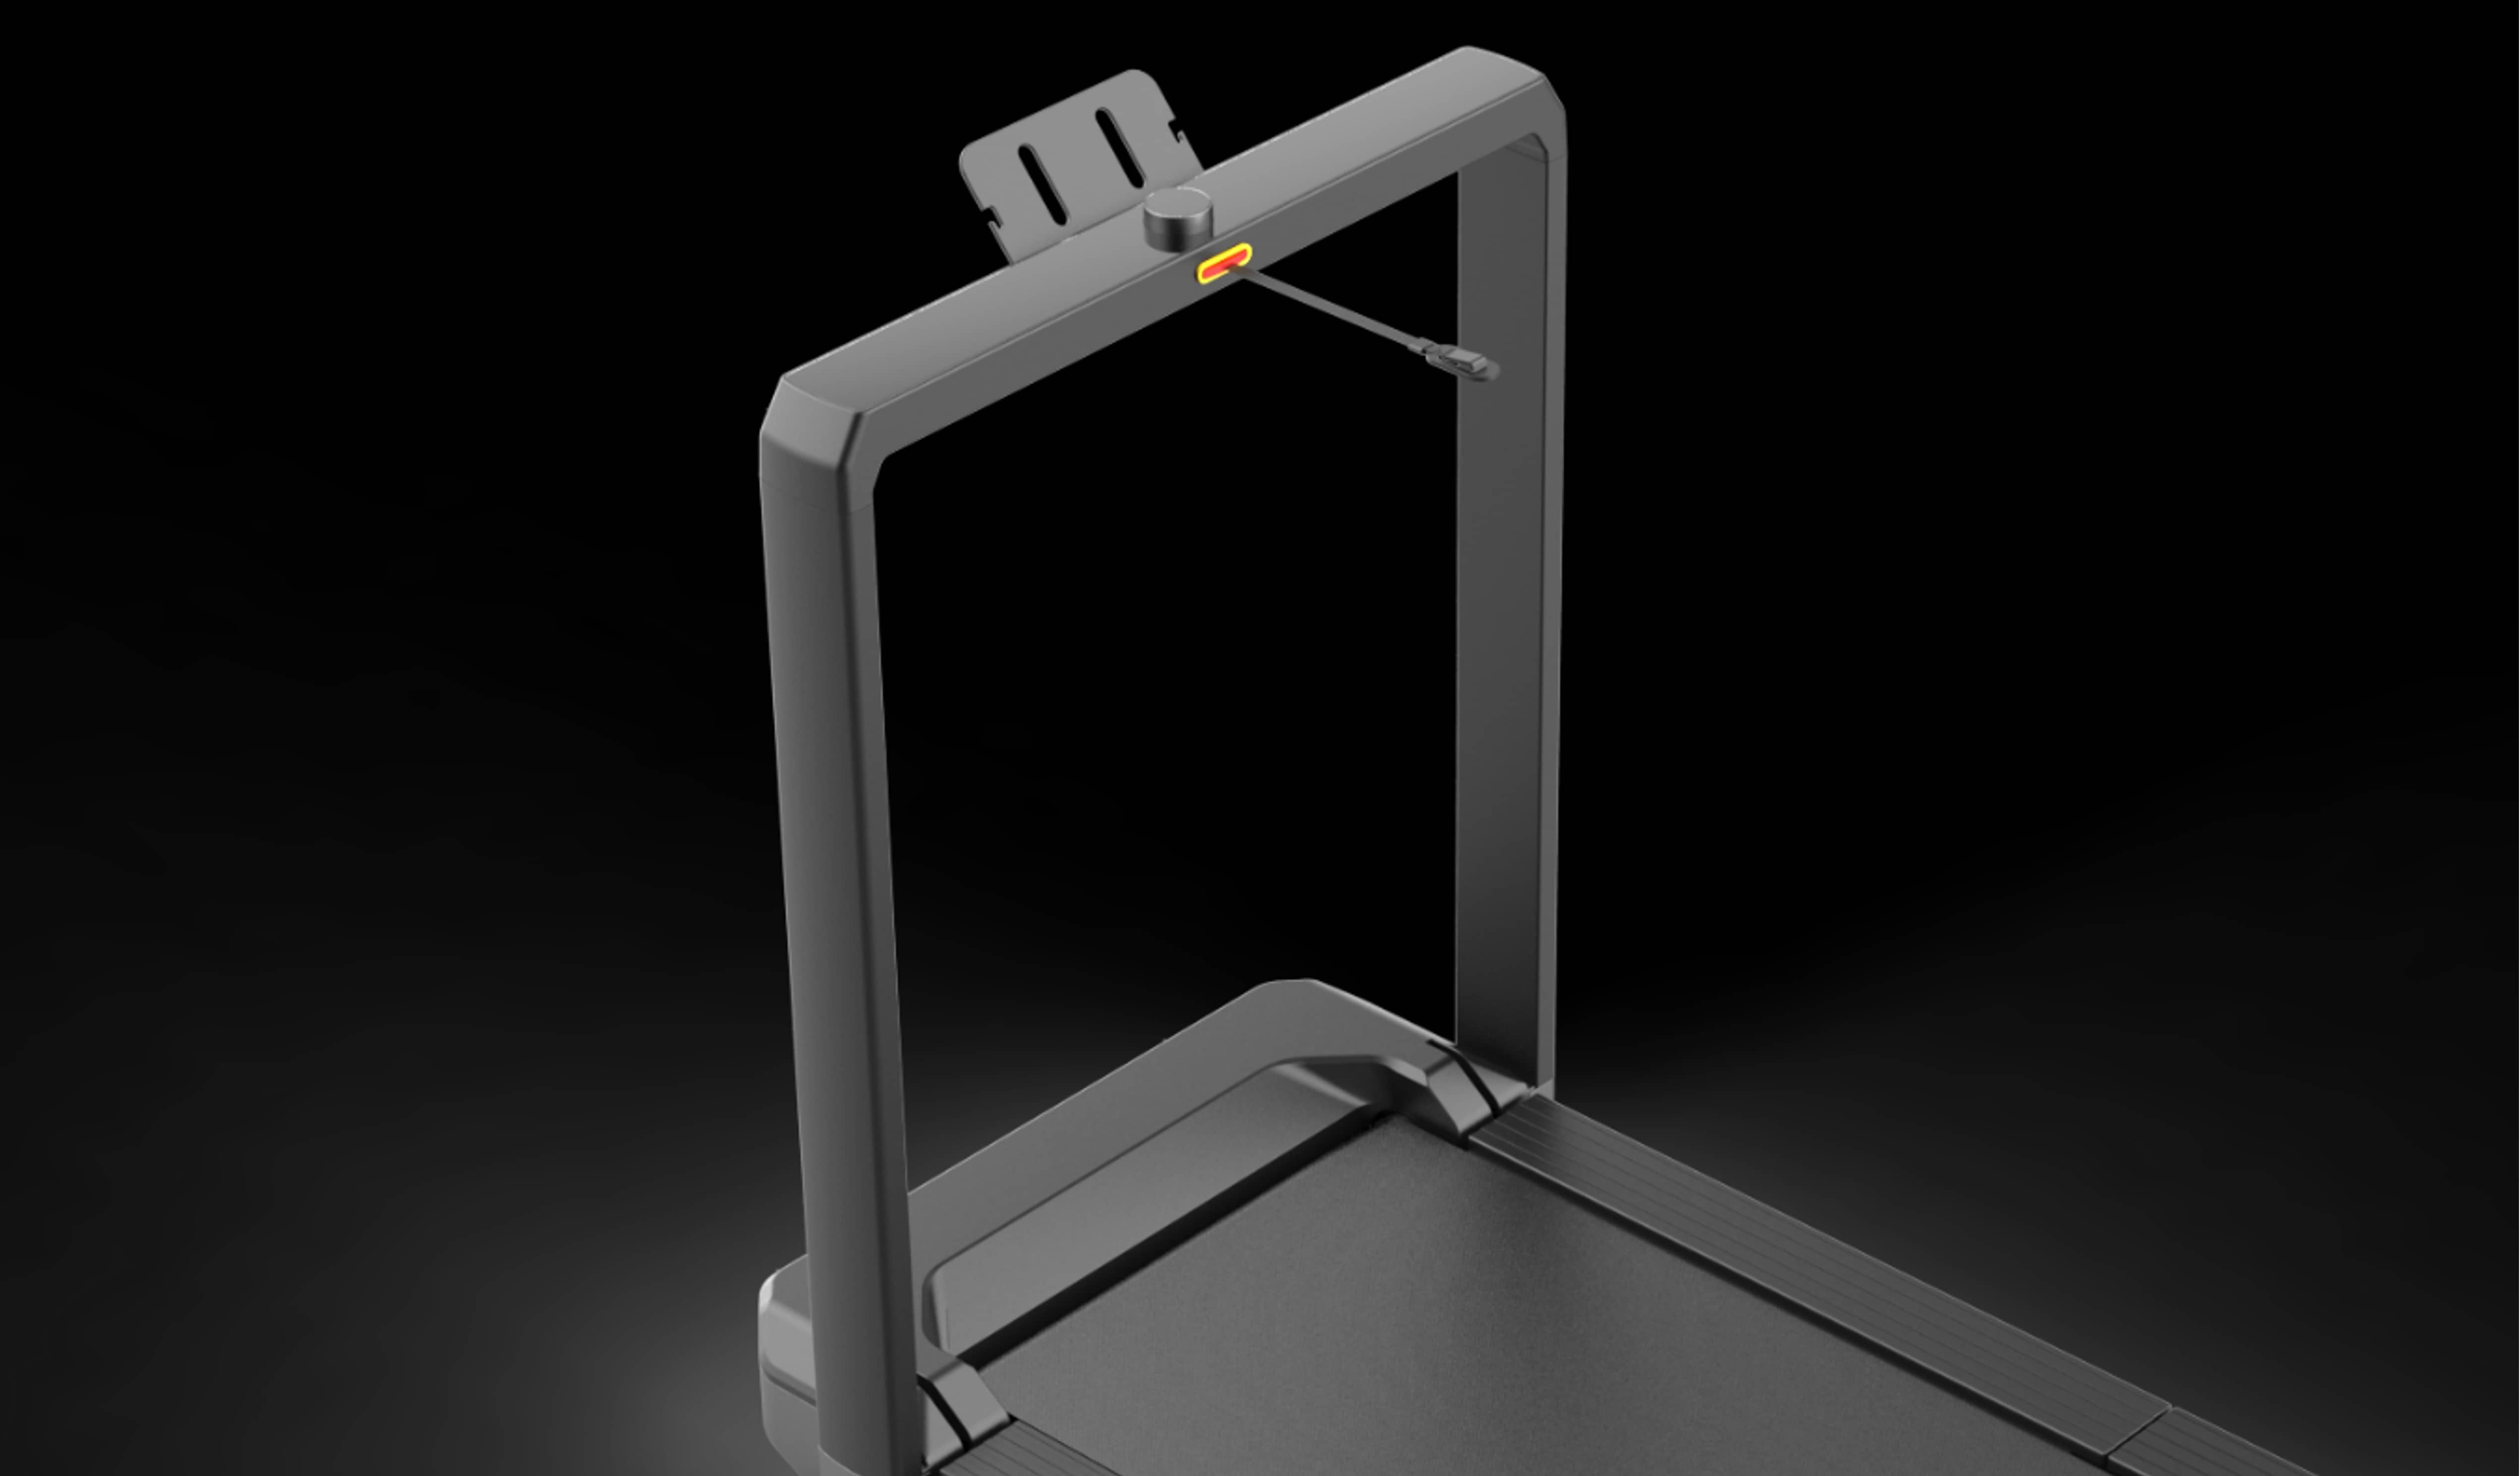 הליכון מתקפל חכם Walkingpad MX16 - צבע שחור שנה אחריות ע"י רונלייט היבואן הרשמי